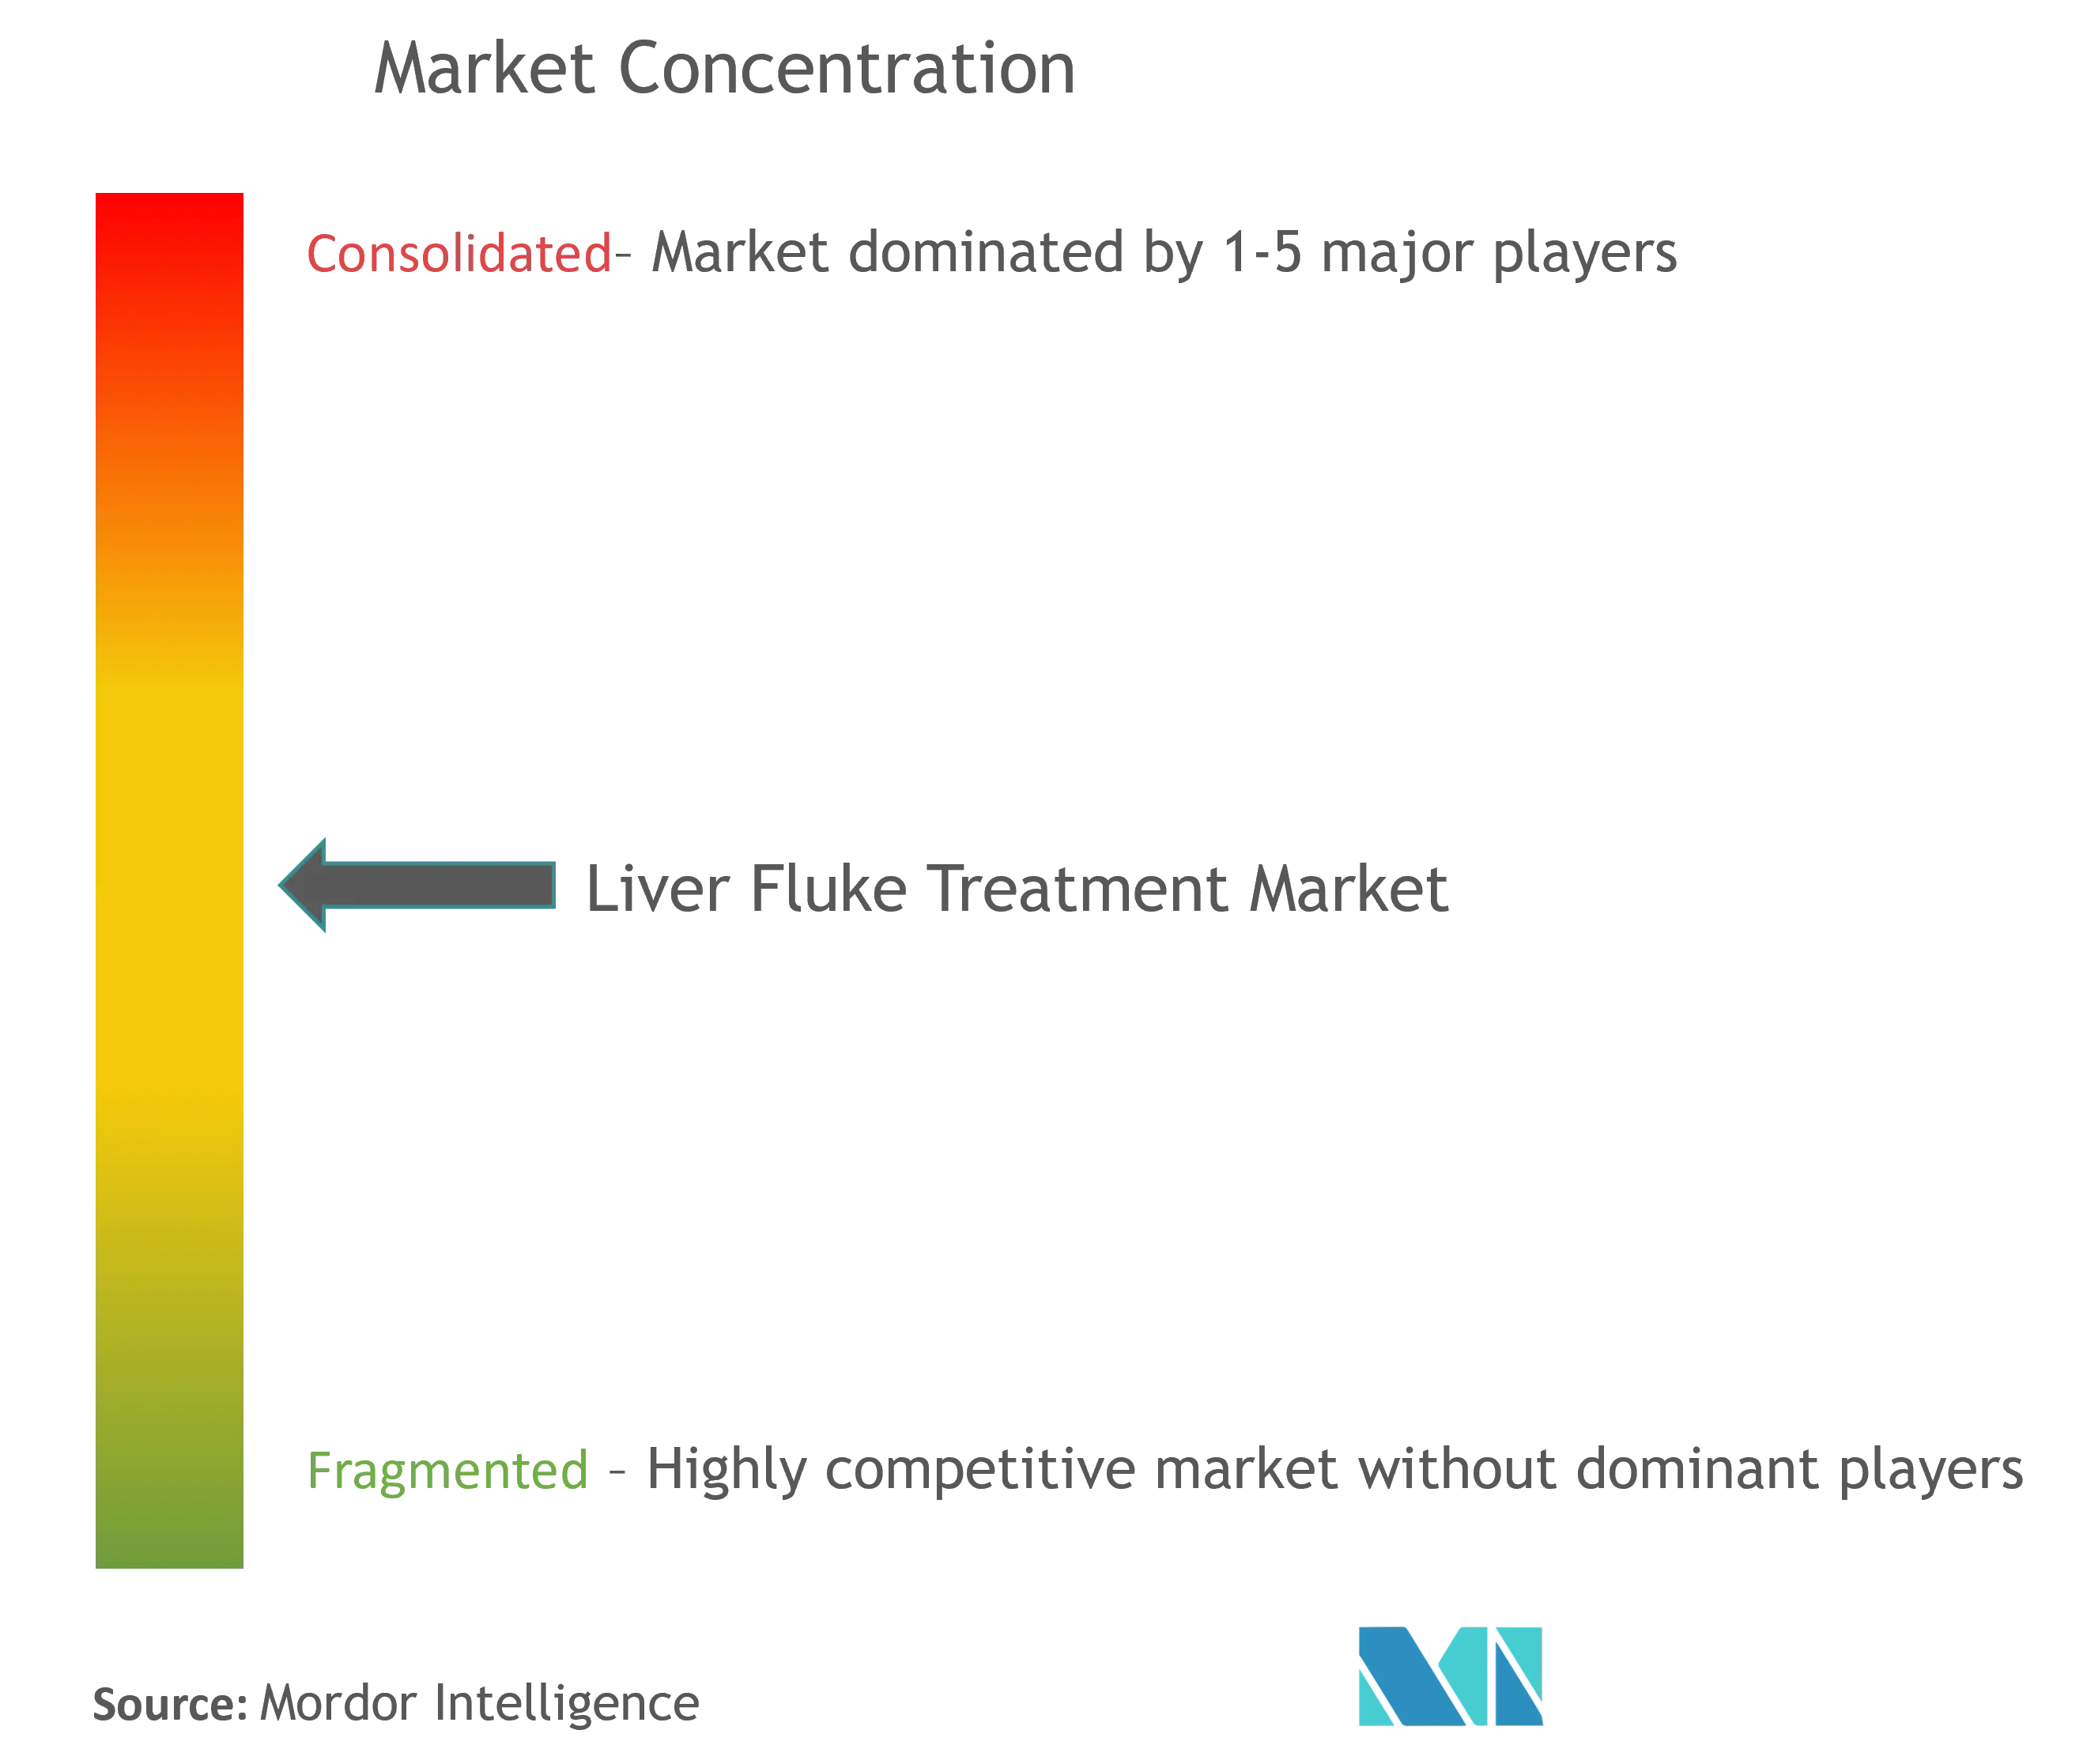 Liver Fluke Treatment Market Concentration